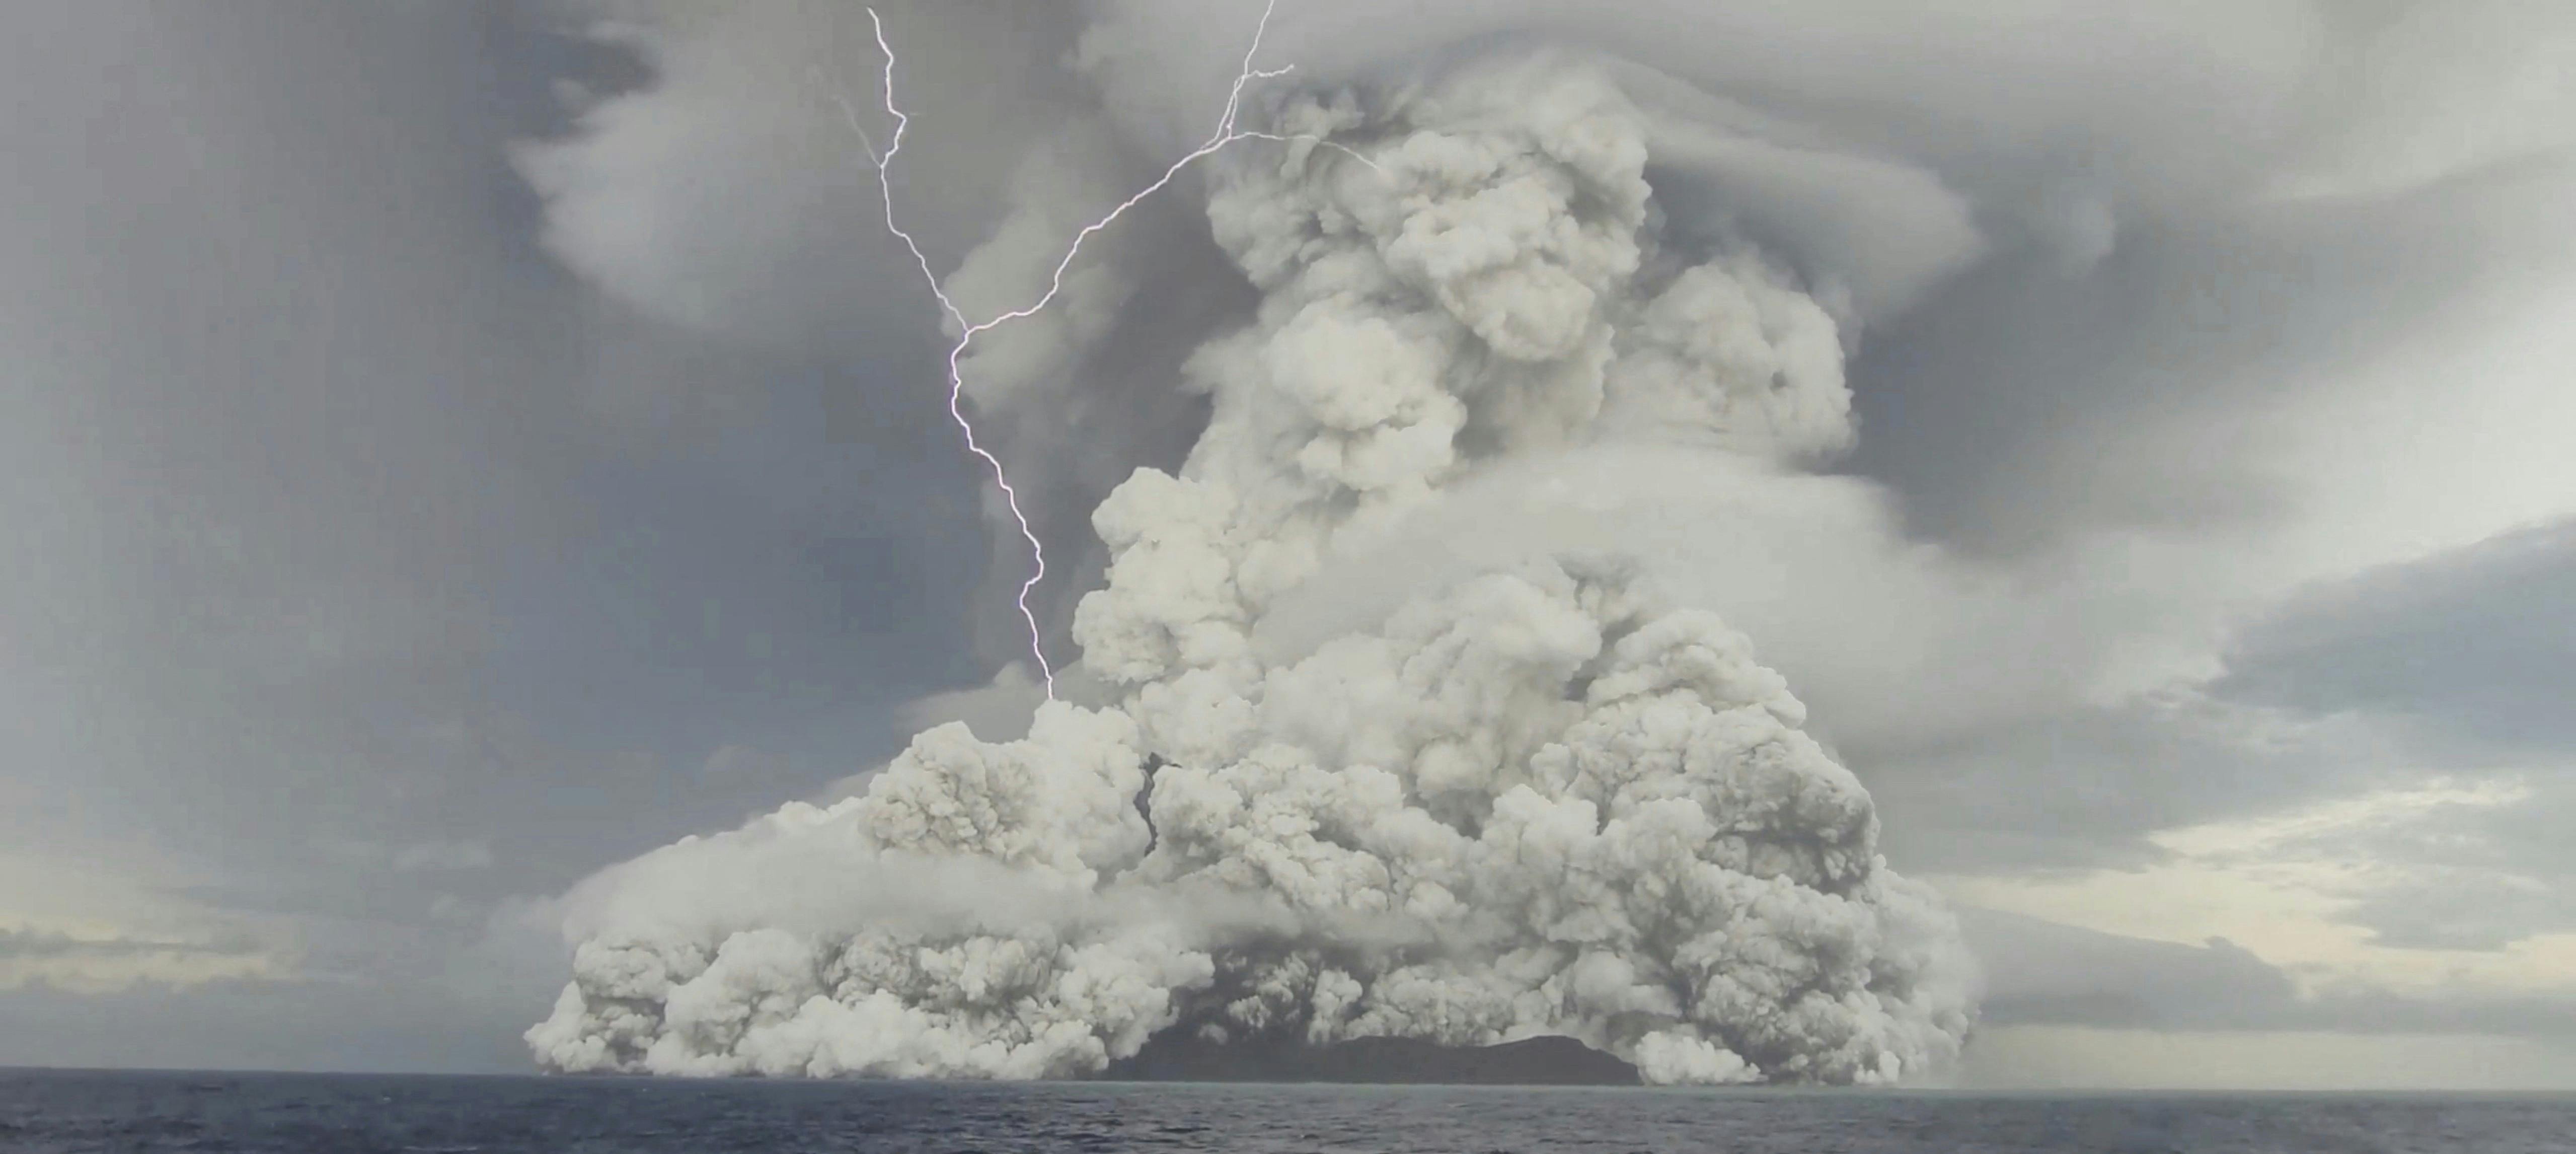 En gigantisk sky af damp og aske formede sig over havet efter udbruddet. Den nåede flere kilometer op i atmosfæren.